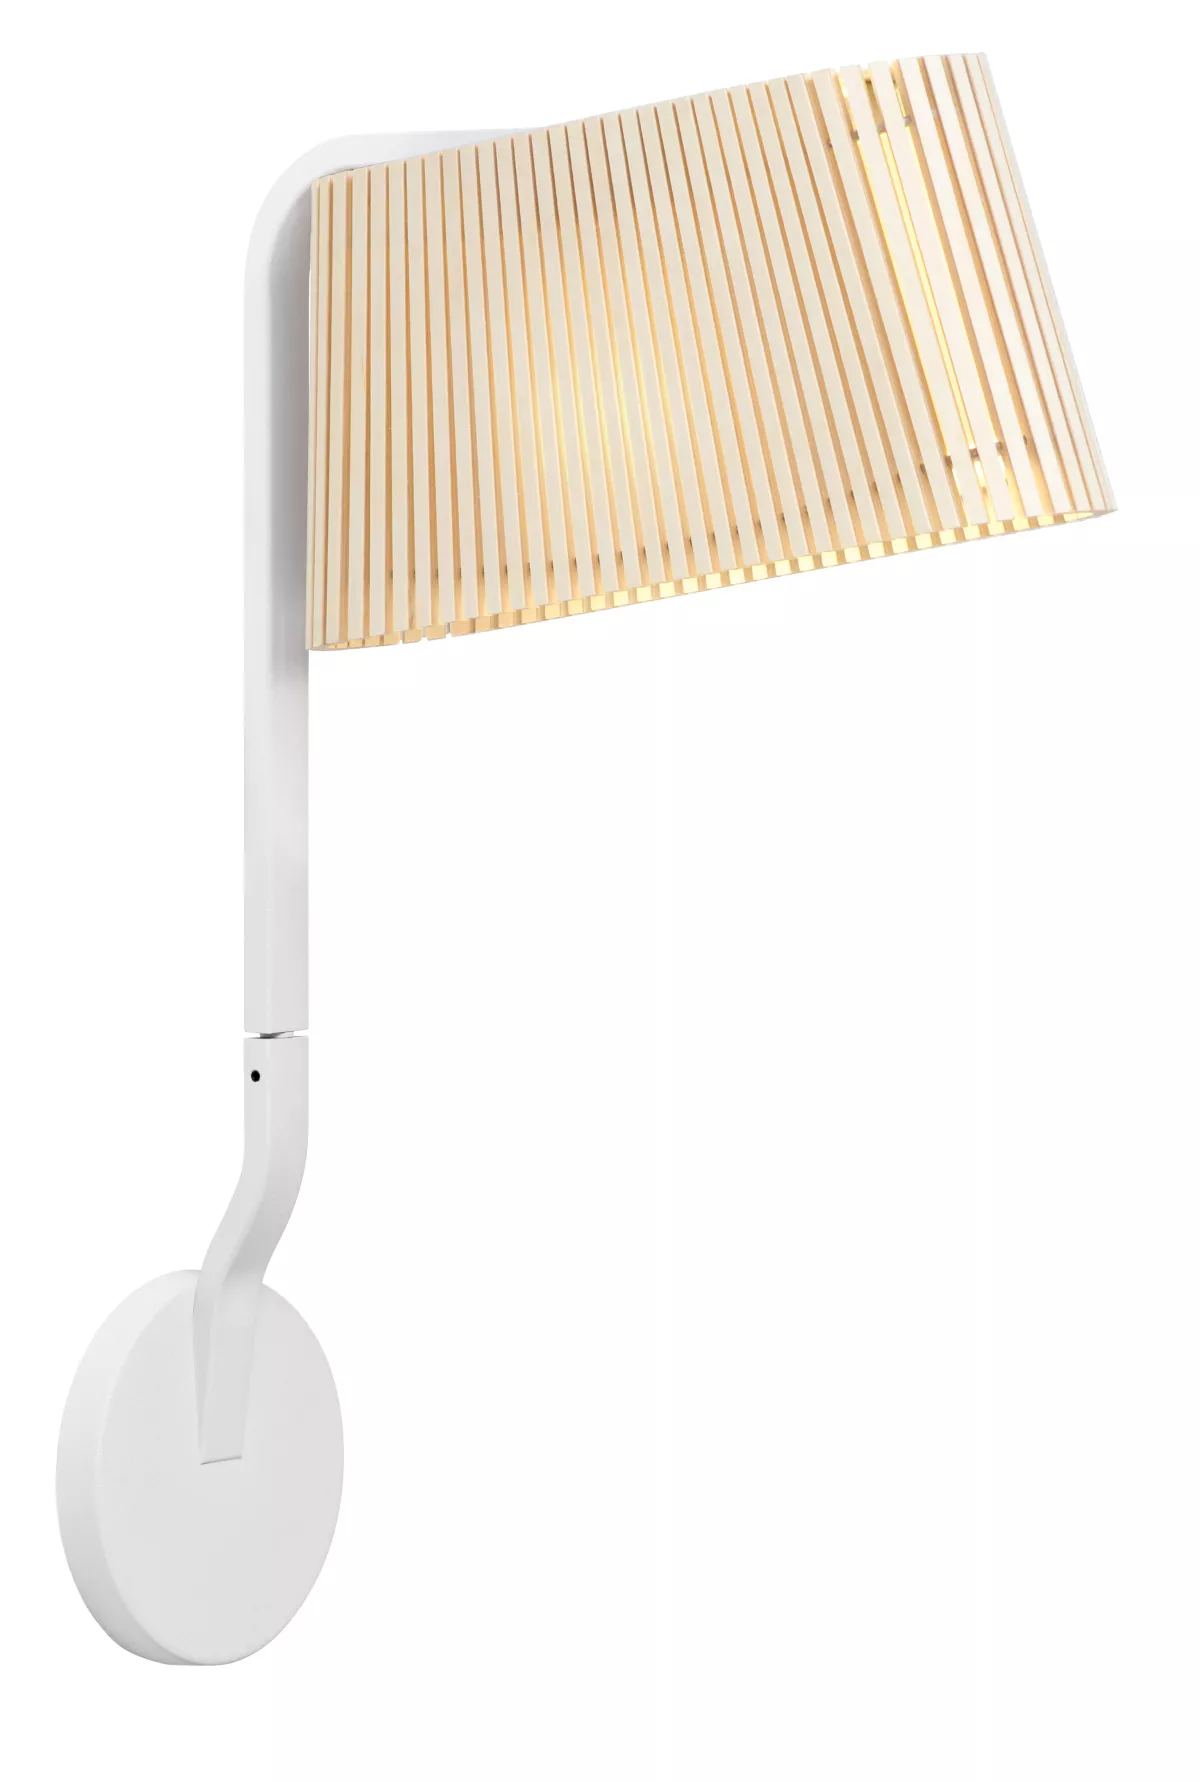 #1 - Owalo 7030 væglampe (Natur) - Secto Design - Designet af Seppo Koho